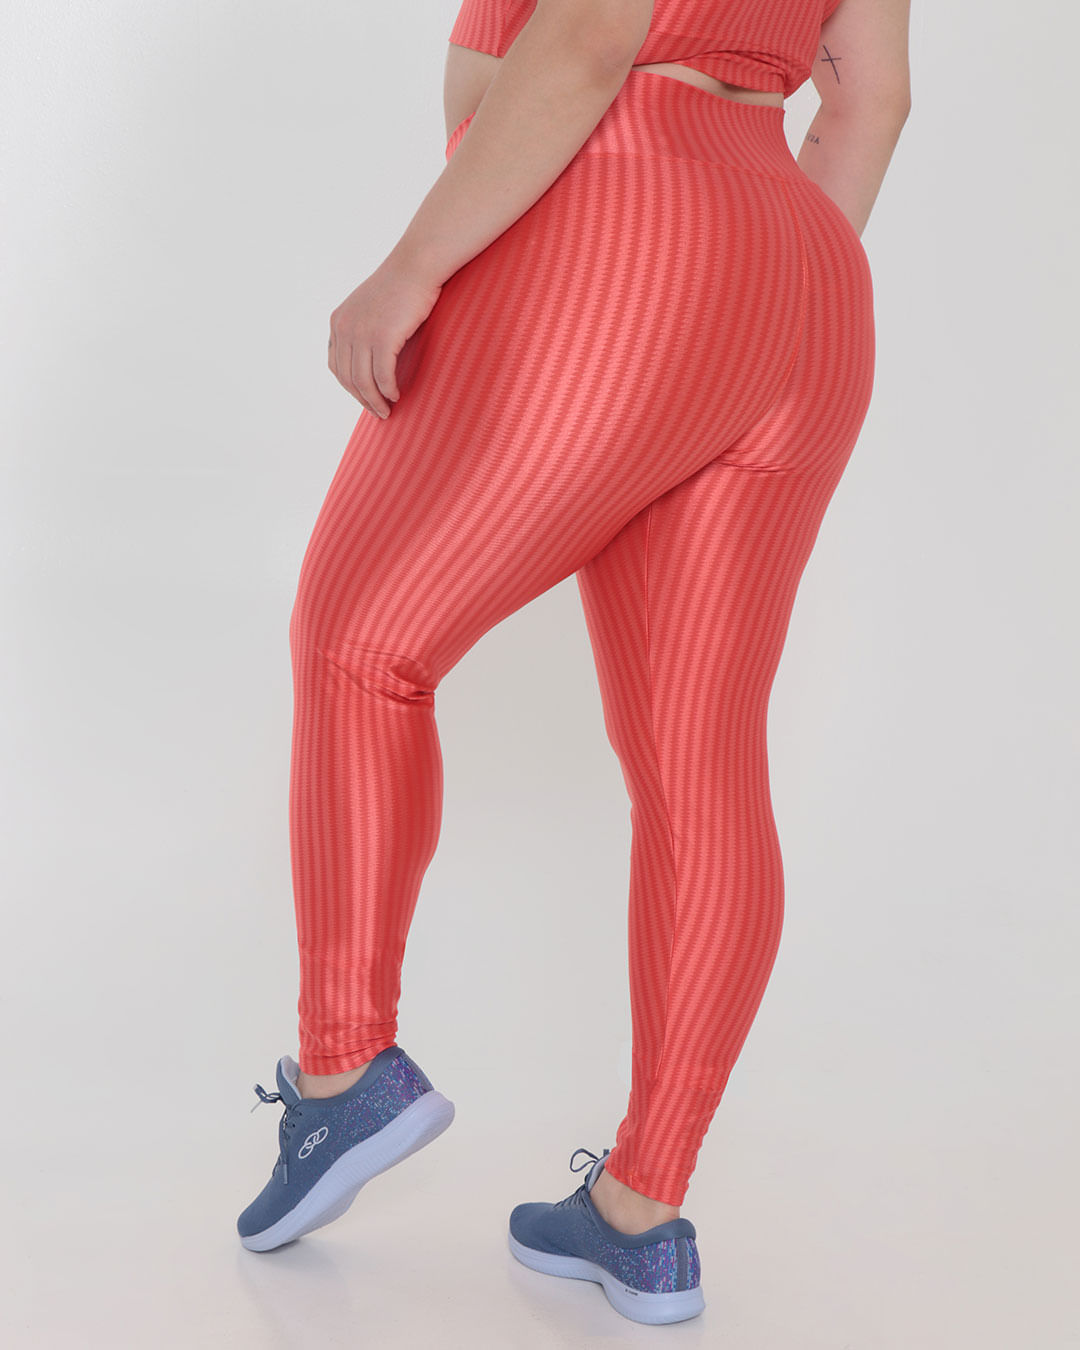 LEGGING 3D - Kilty Fitness - Moda para Academia